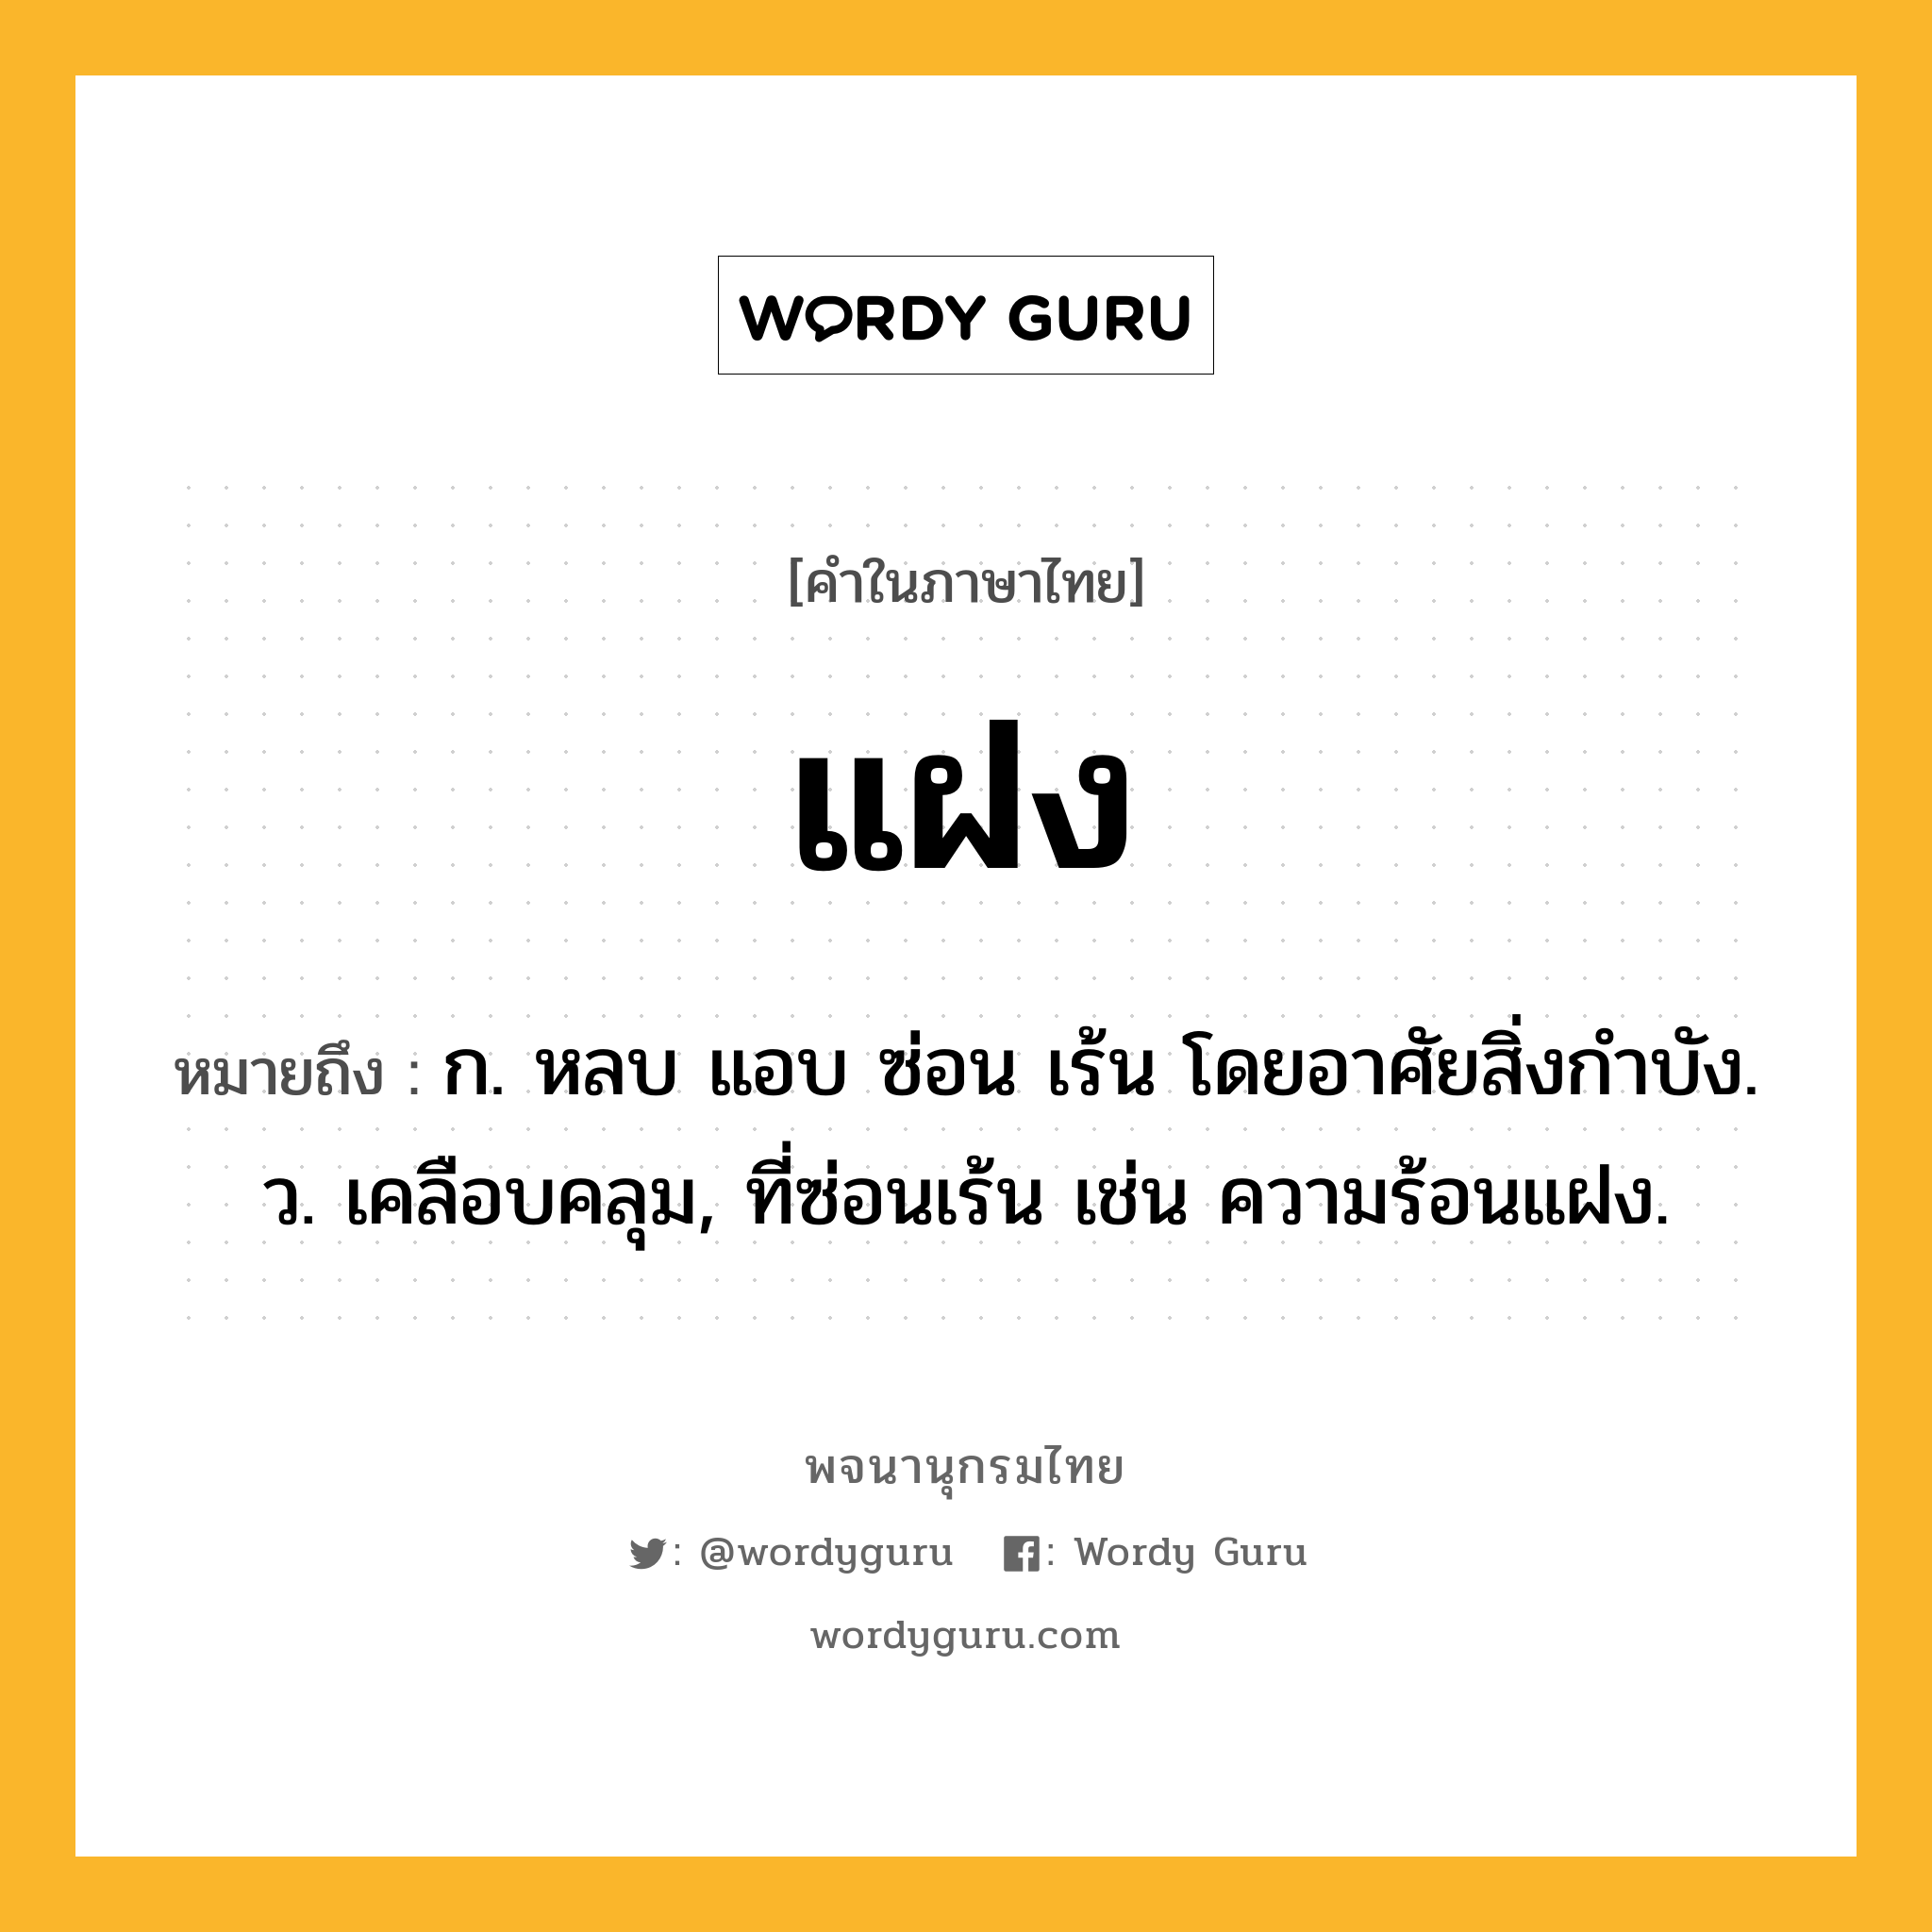 แฝง หมายถึงอะไร?, คำในภาษาไทย แฝง หมายถึง ก. หลบ แอบ ซ่อน เร้น โดยอาศัยสิ่งกําบัง. ว. เคลือบคลุม, ที่ซ่อนเร้น เช่น ความร้อนแฝง.